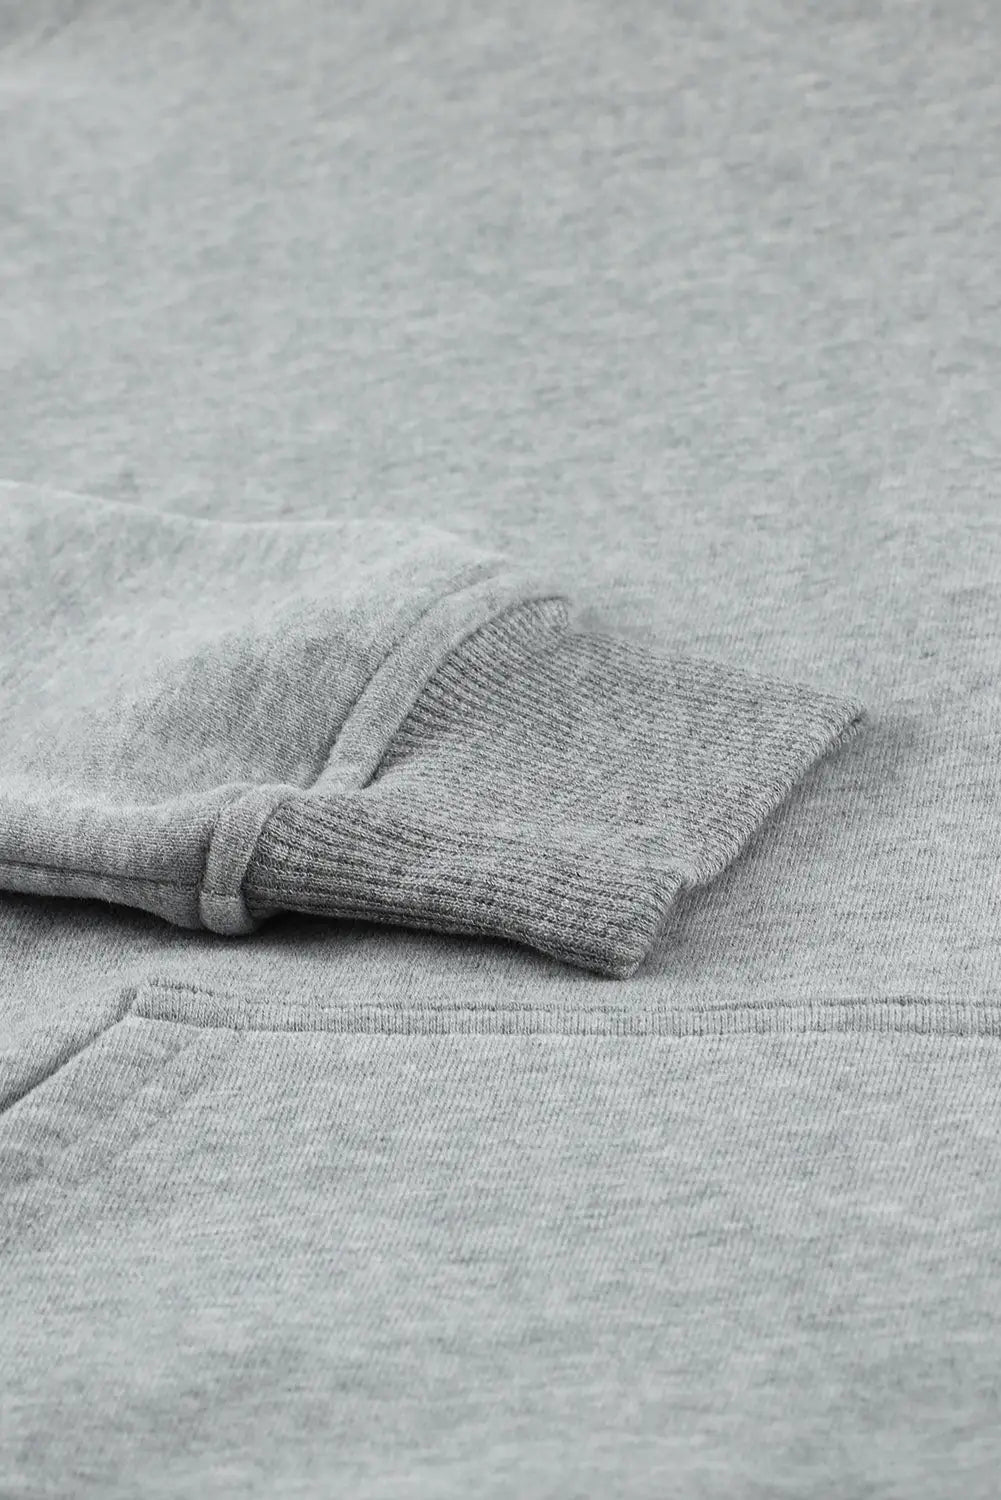 Gray loose kangaroo pocket hoodie - sweatshirts & hoodies